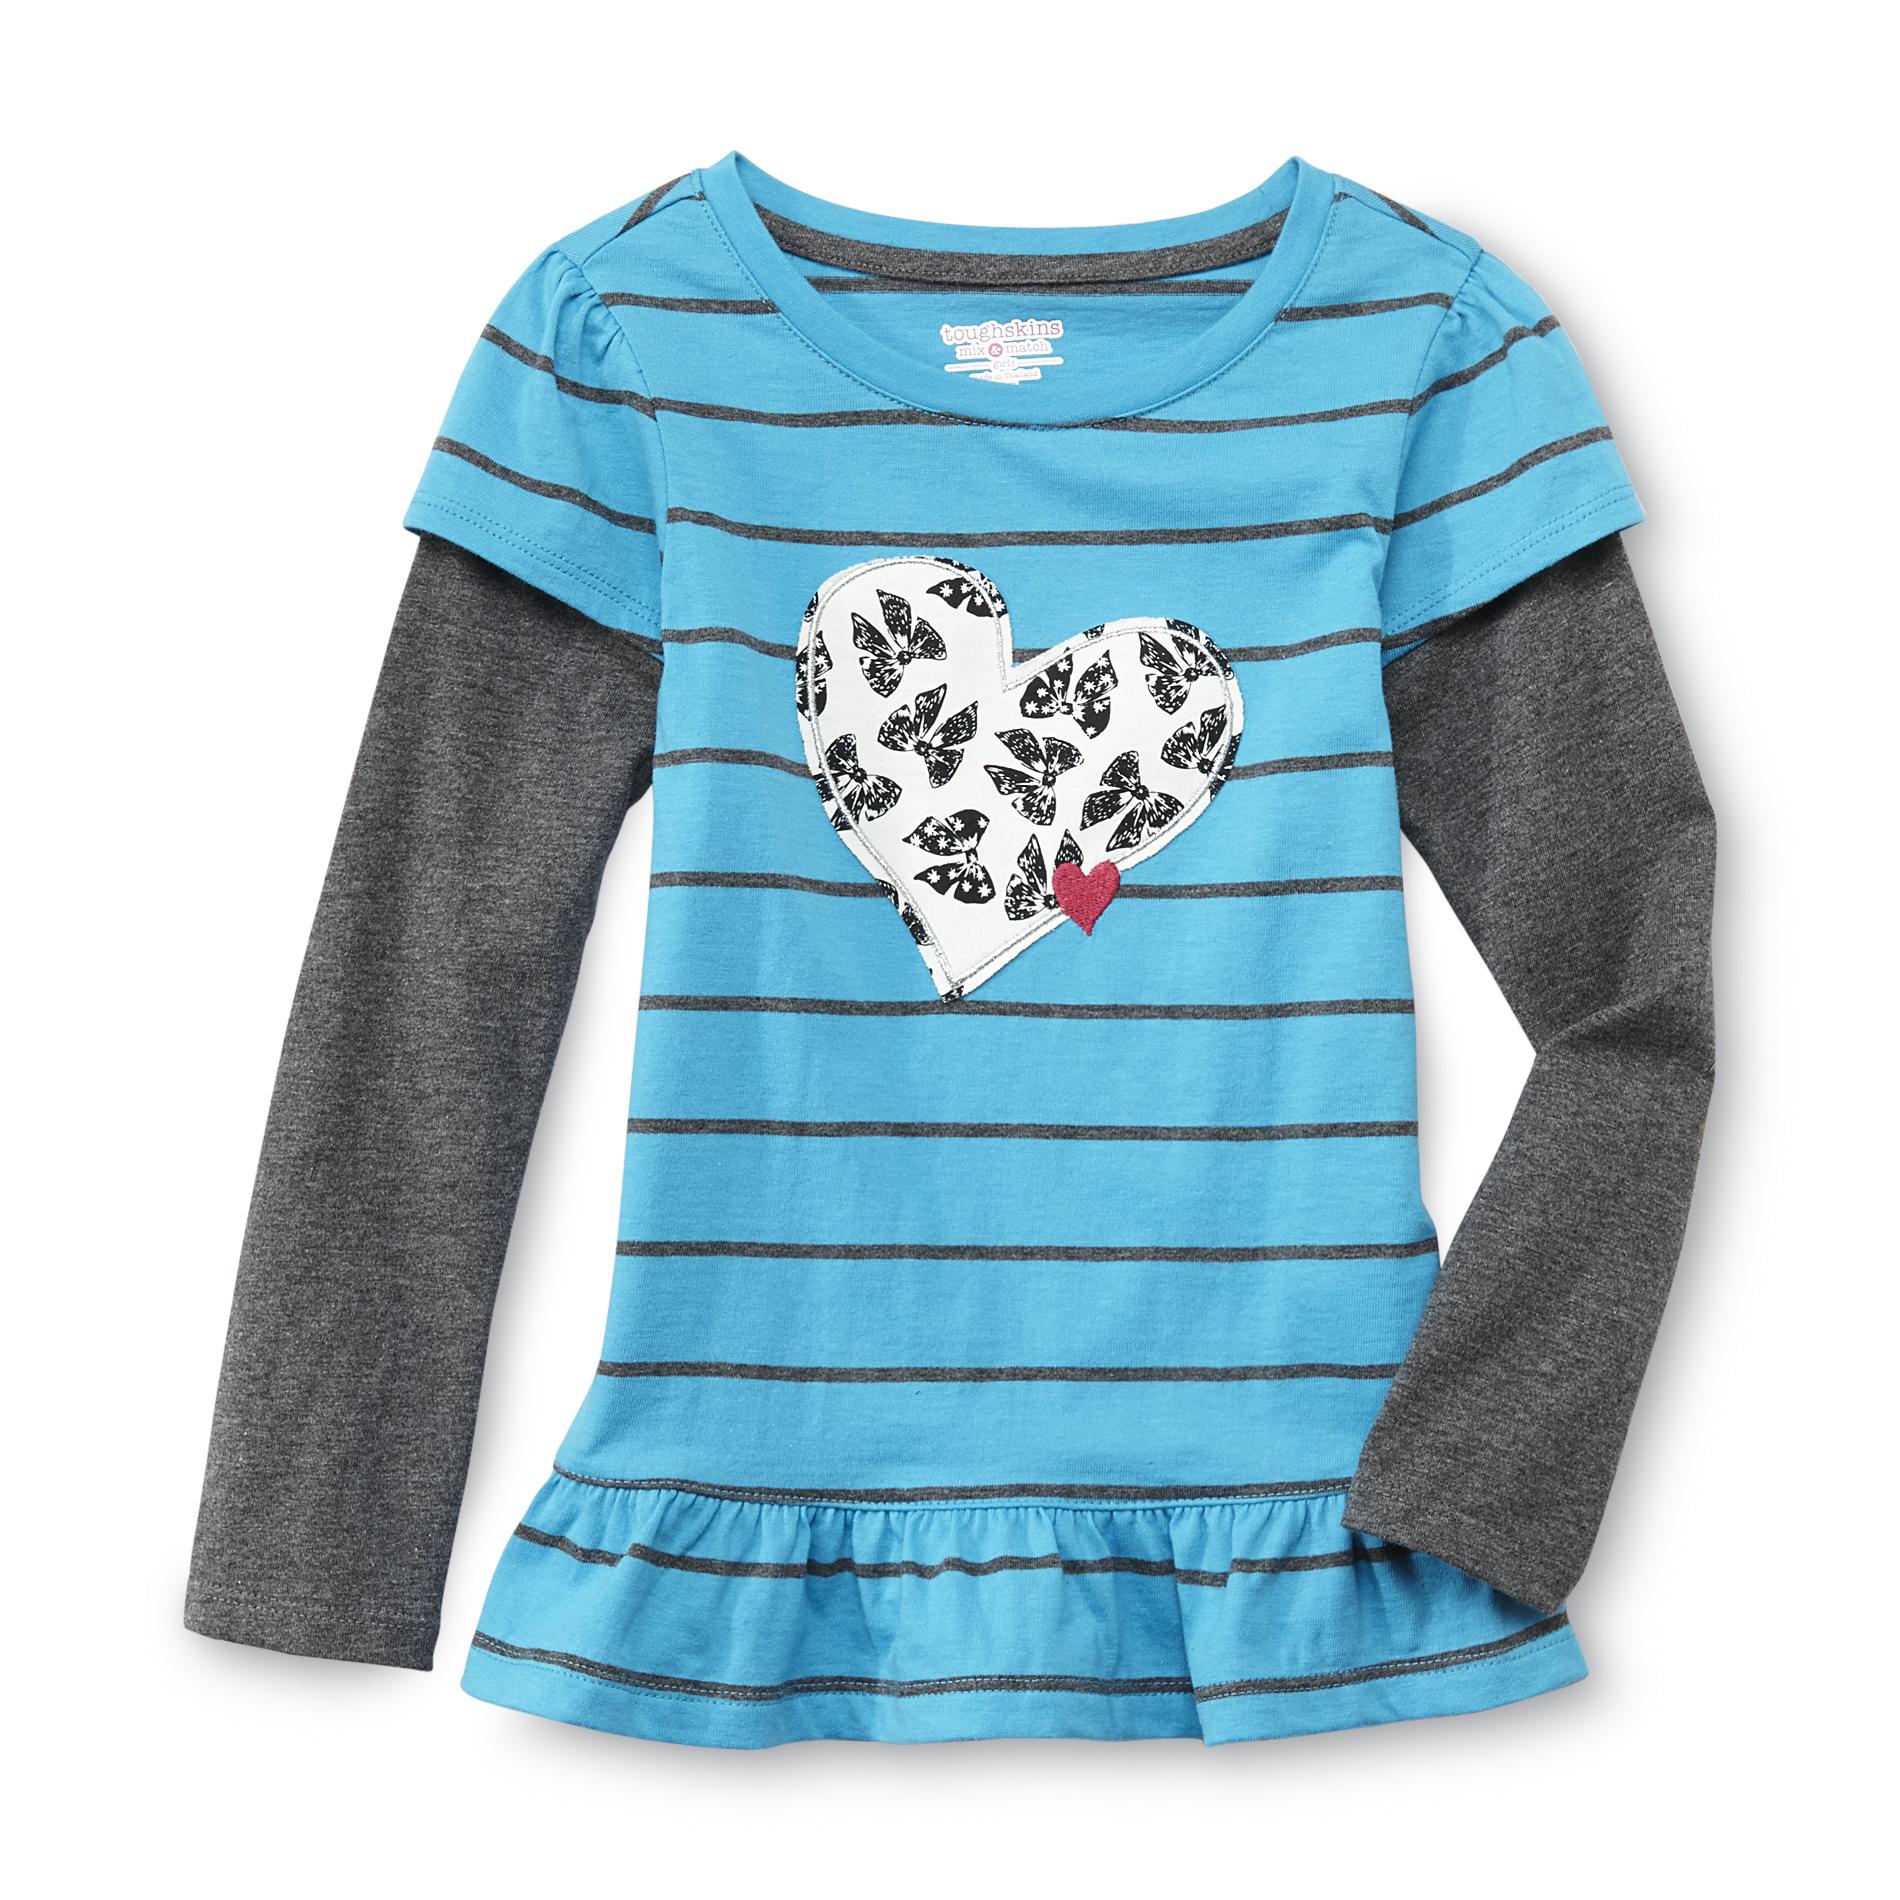 Toughskins Infant & Toddler Girl's Long-Sleeve Tunic - Heart